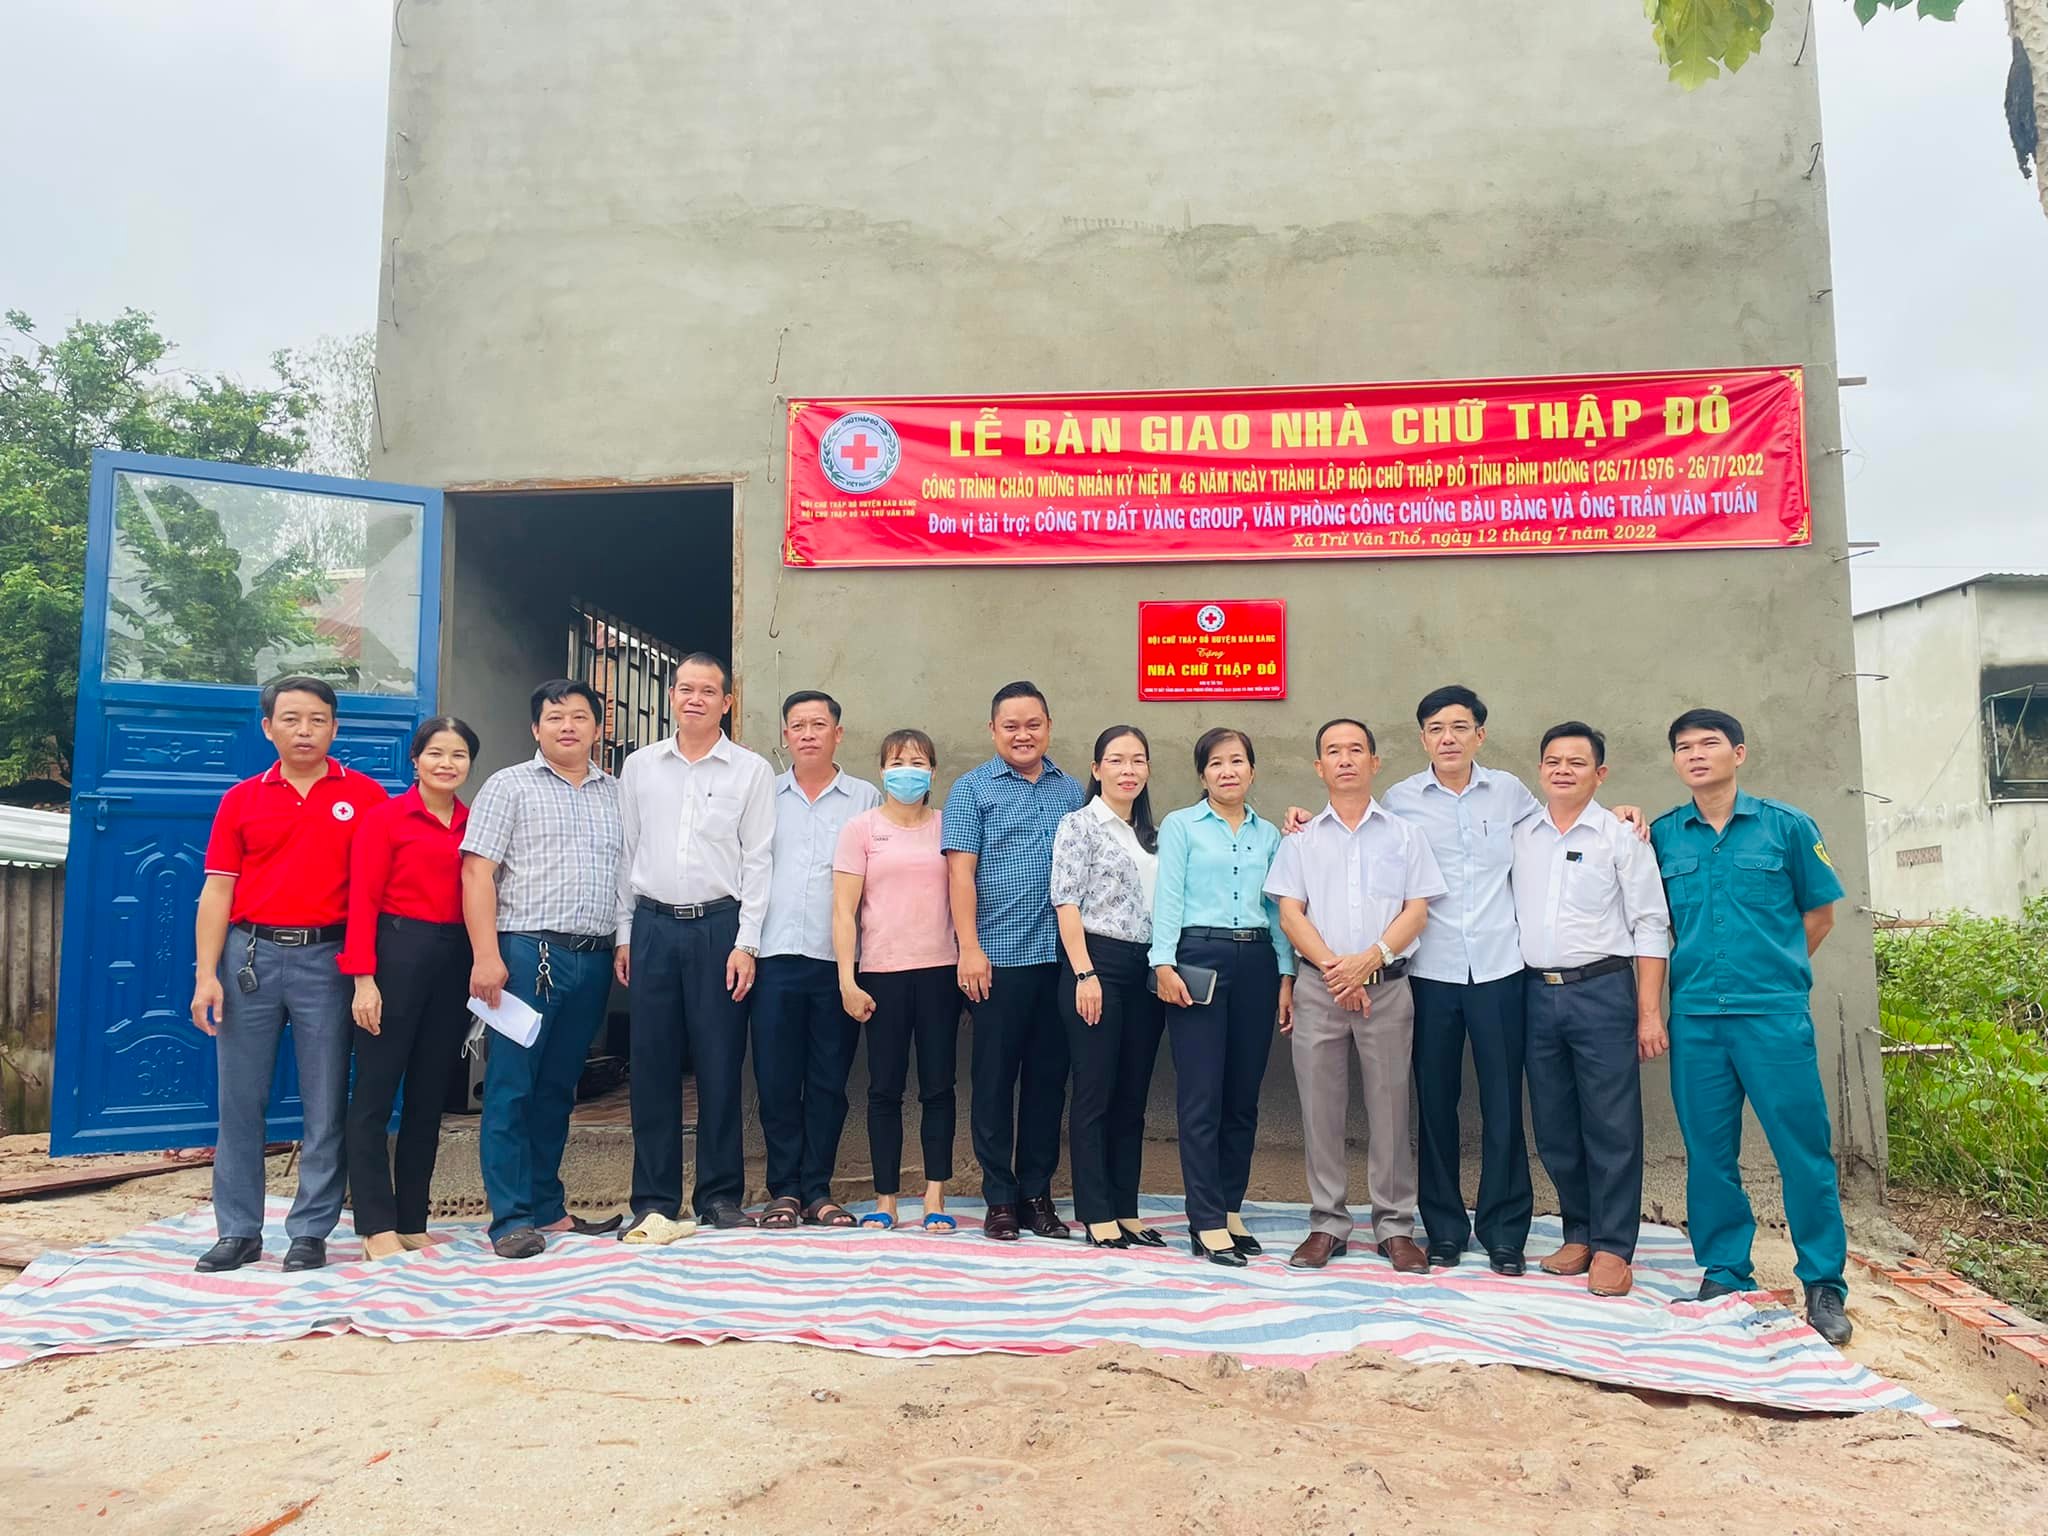 Trao nhà Chữ thập đỏ cho gia đình bà Nguyễn Thị Hường